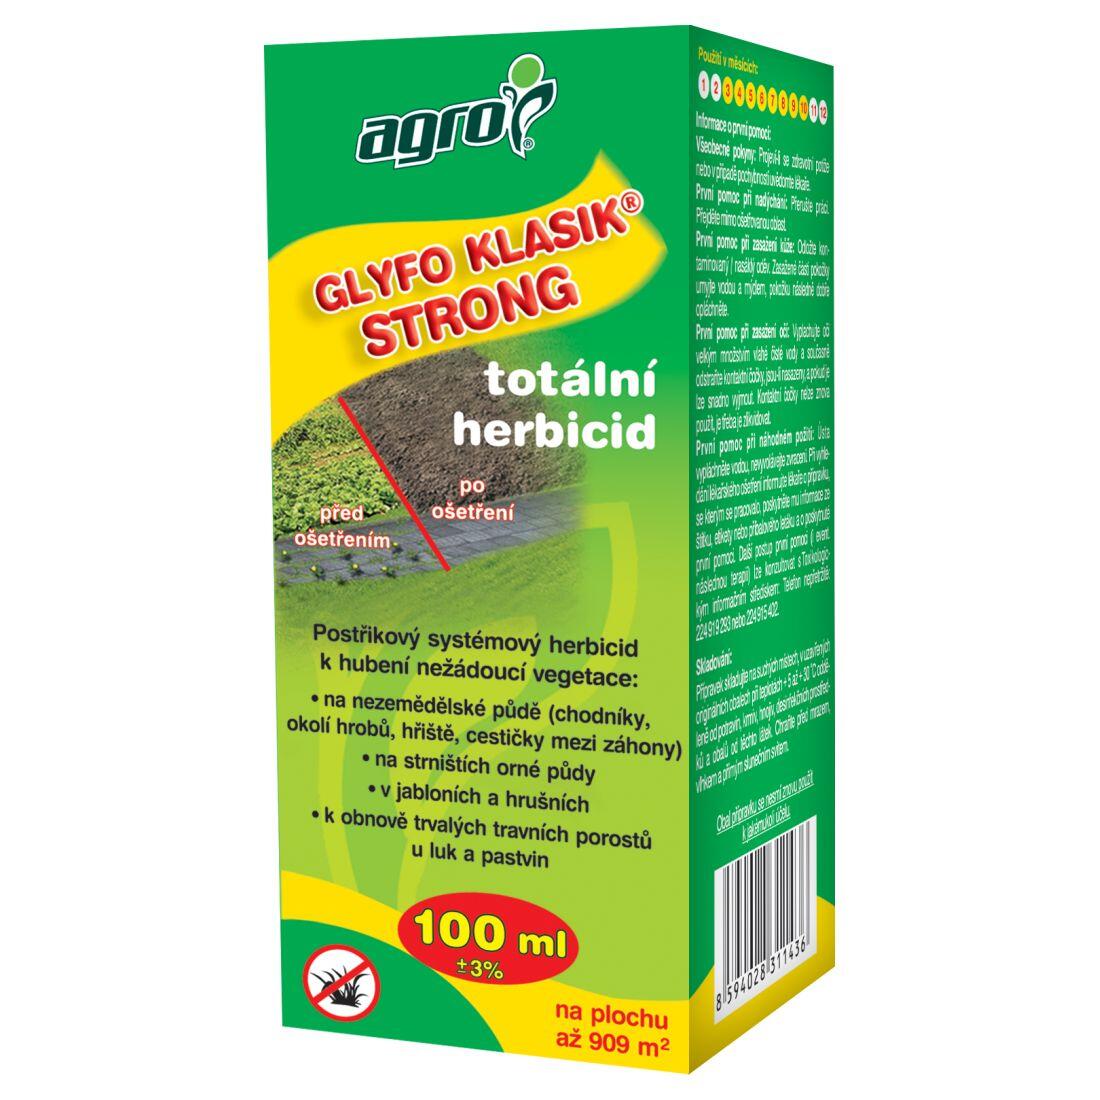 AGRO GLYFO Klasik Strong total.herbicid  100ml 0.12 Kg MAXMIX Sklad14 912623 46